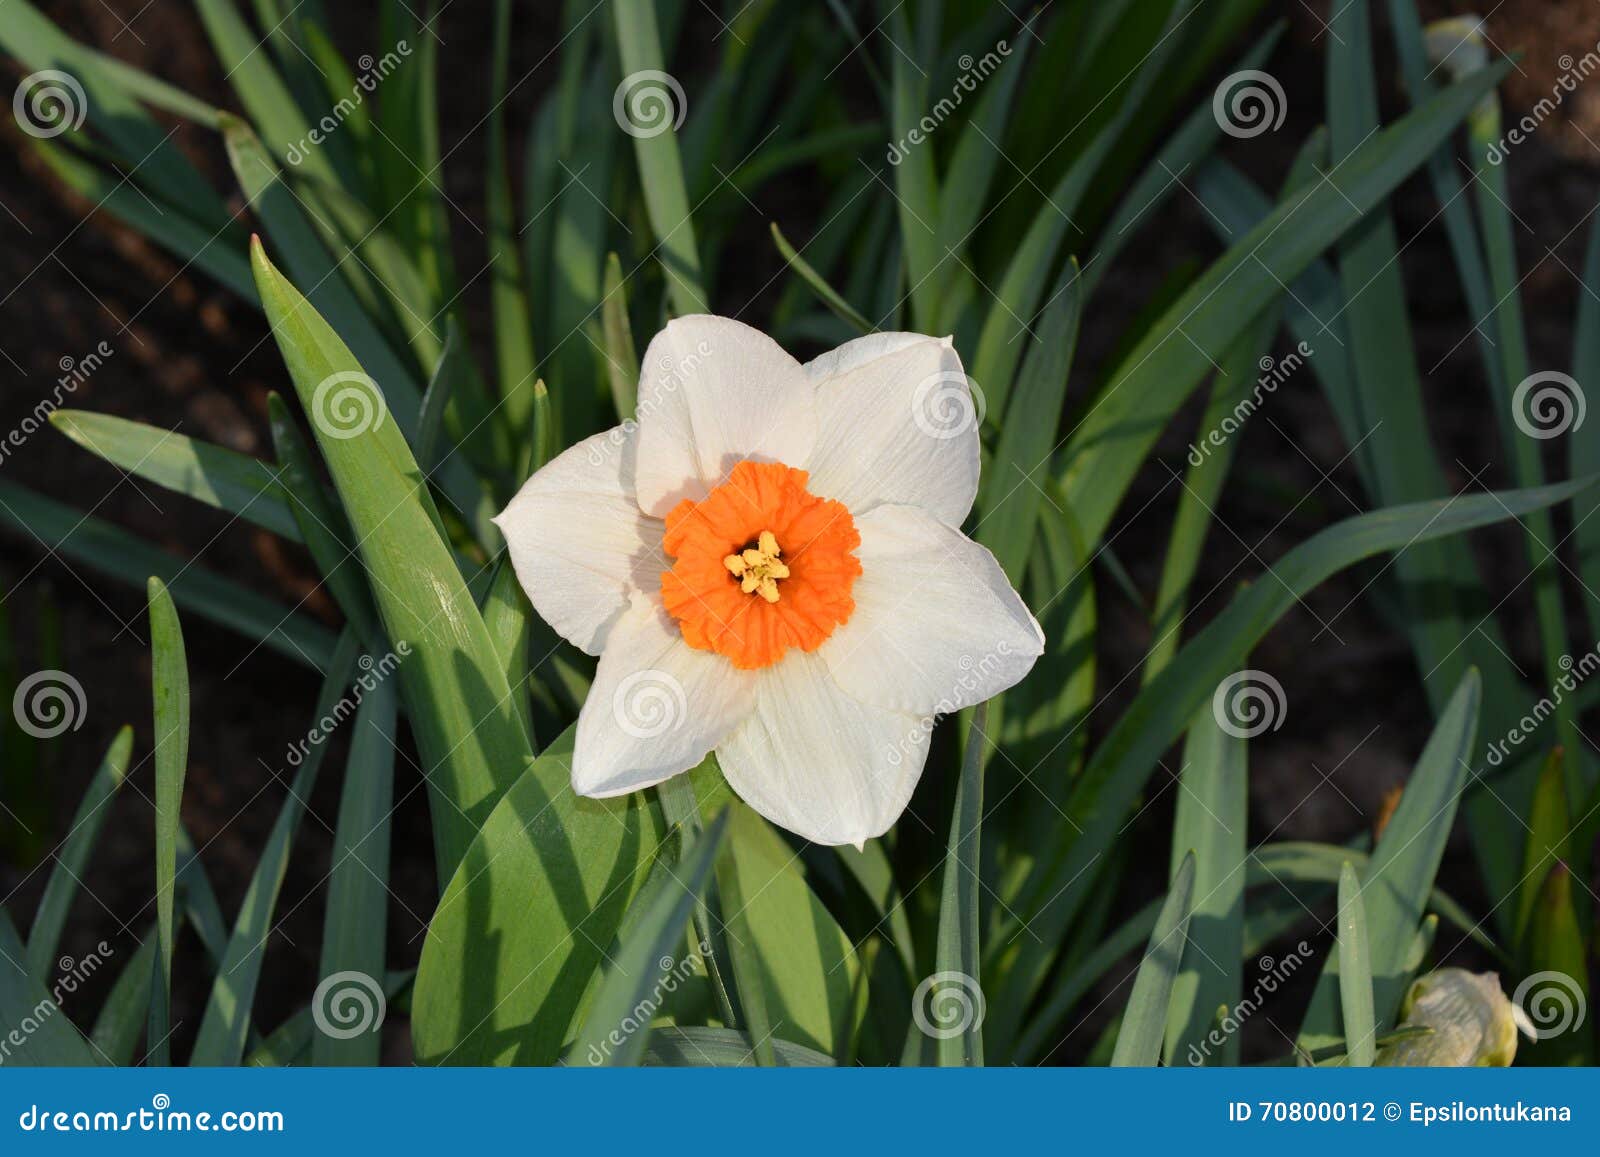 Fleur Blanche Avec Le Coeur Orange Sur Le Fond De Feuilles Photo stock -  Image du jaune, fleurs: 70800012